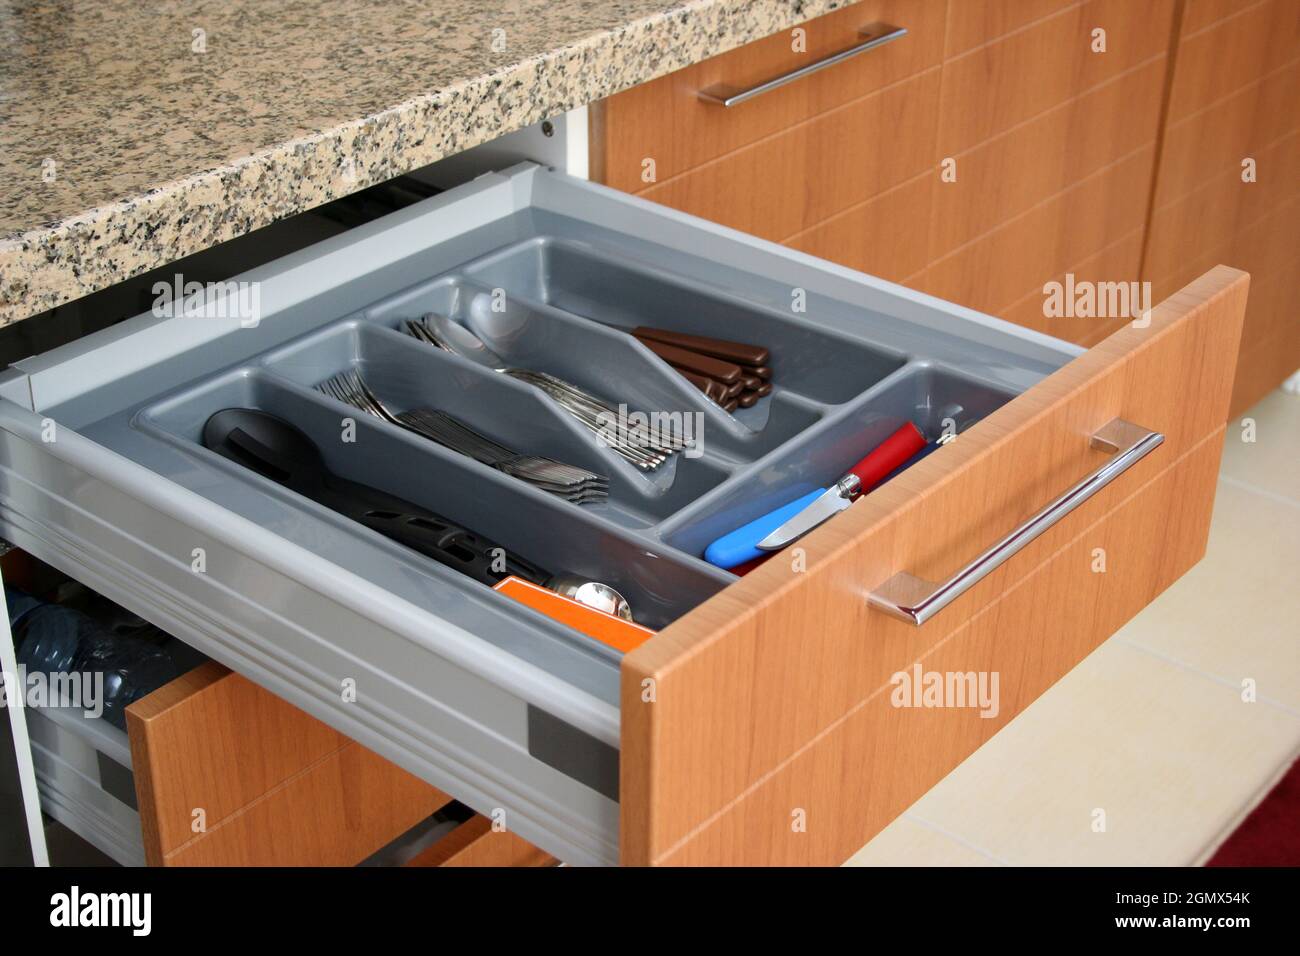 Tenedores, cucharas, cuchillos en el cajón deslizante. Cajones de cocina  correderas Fotografía de stock - Alamy